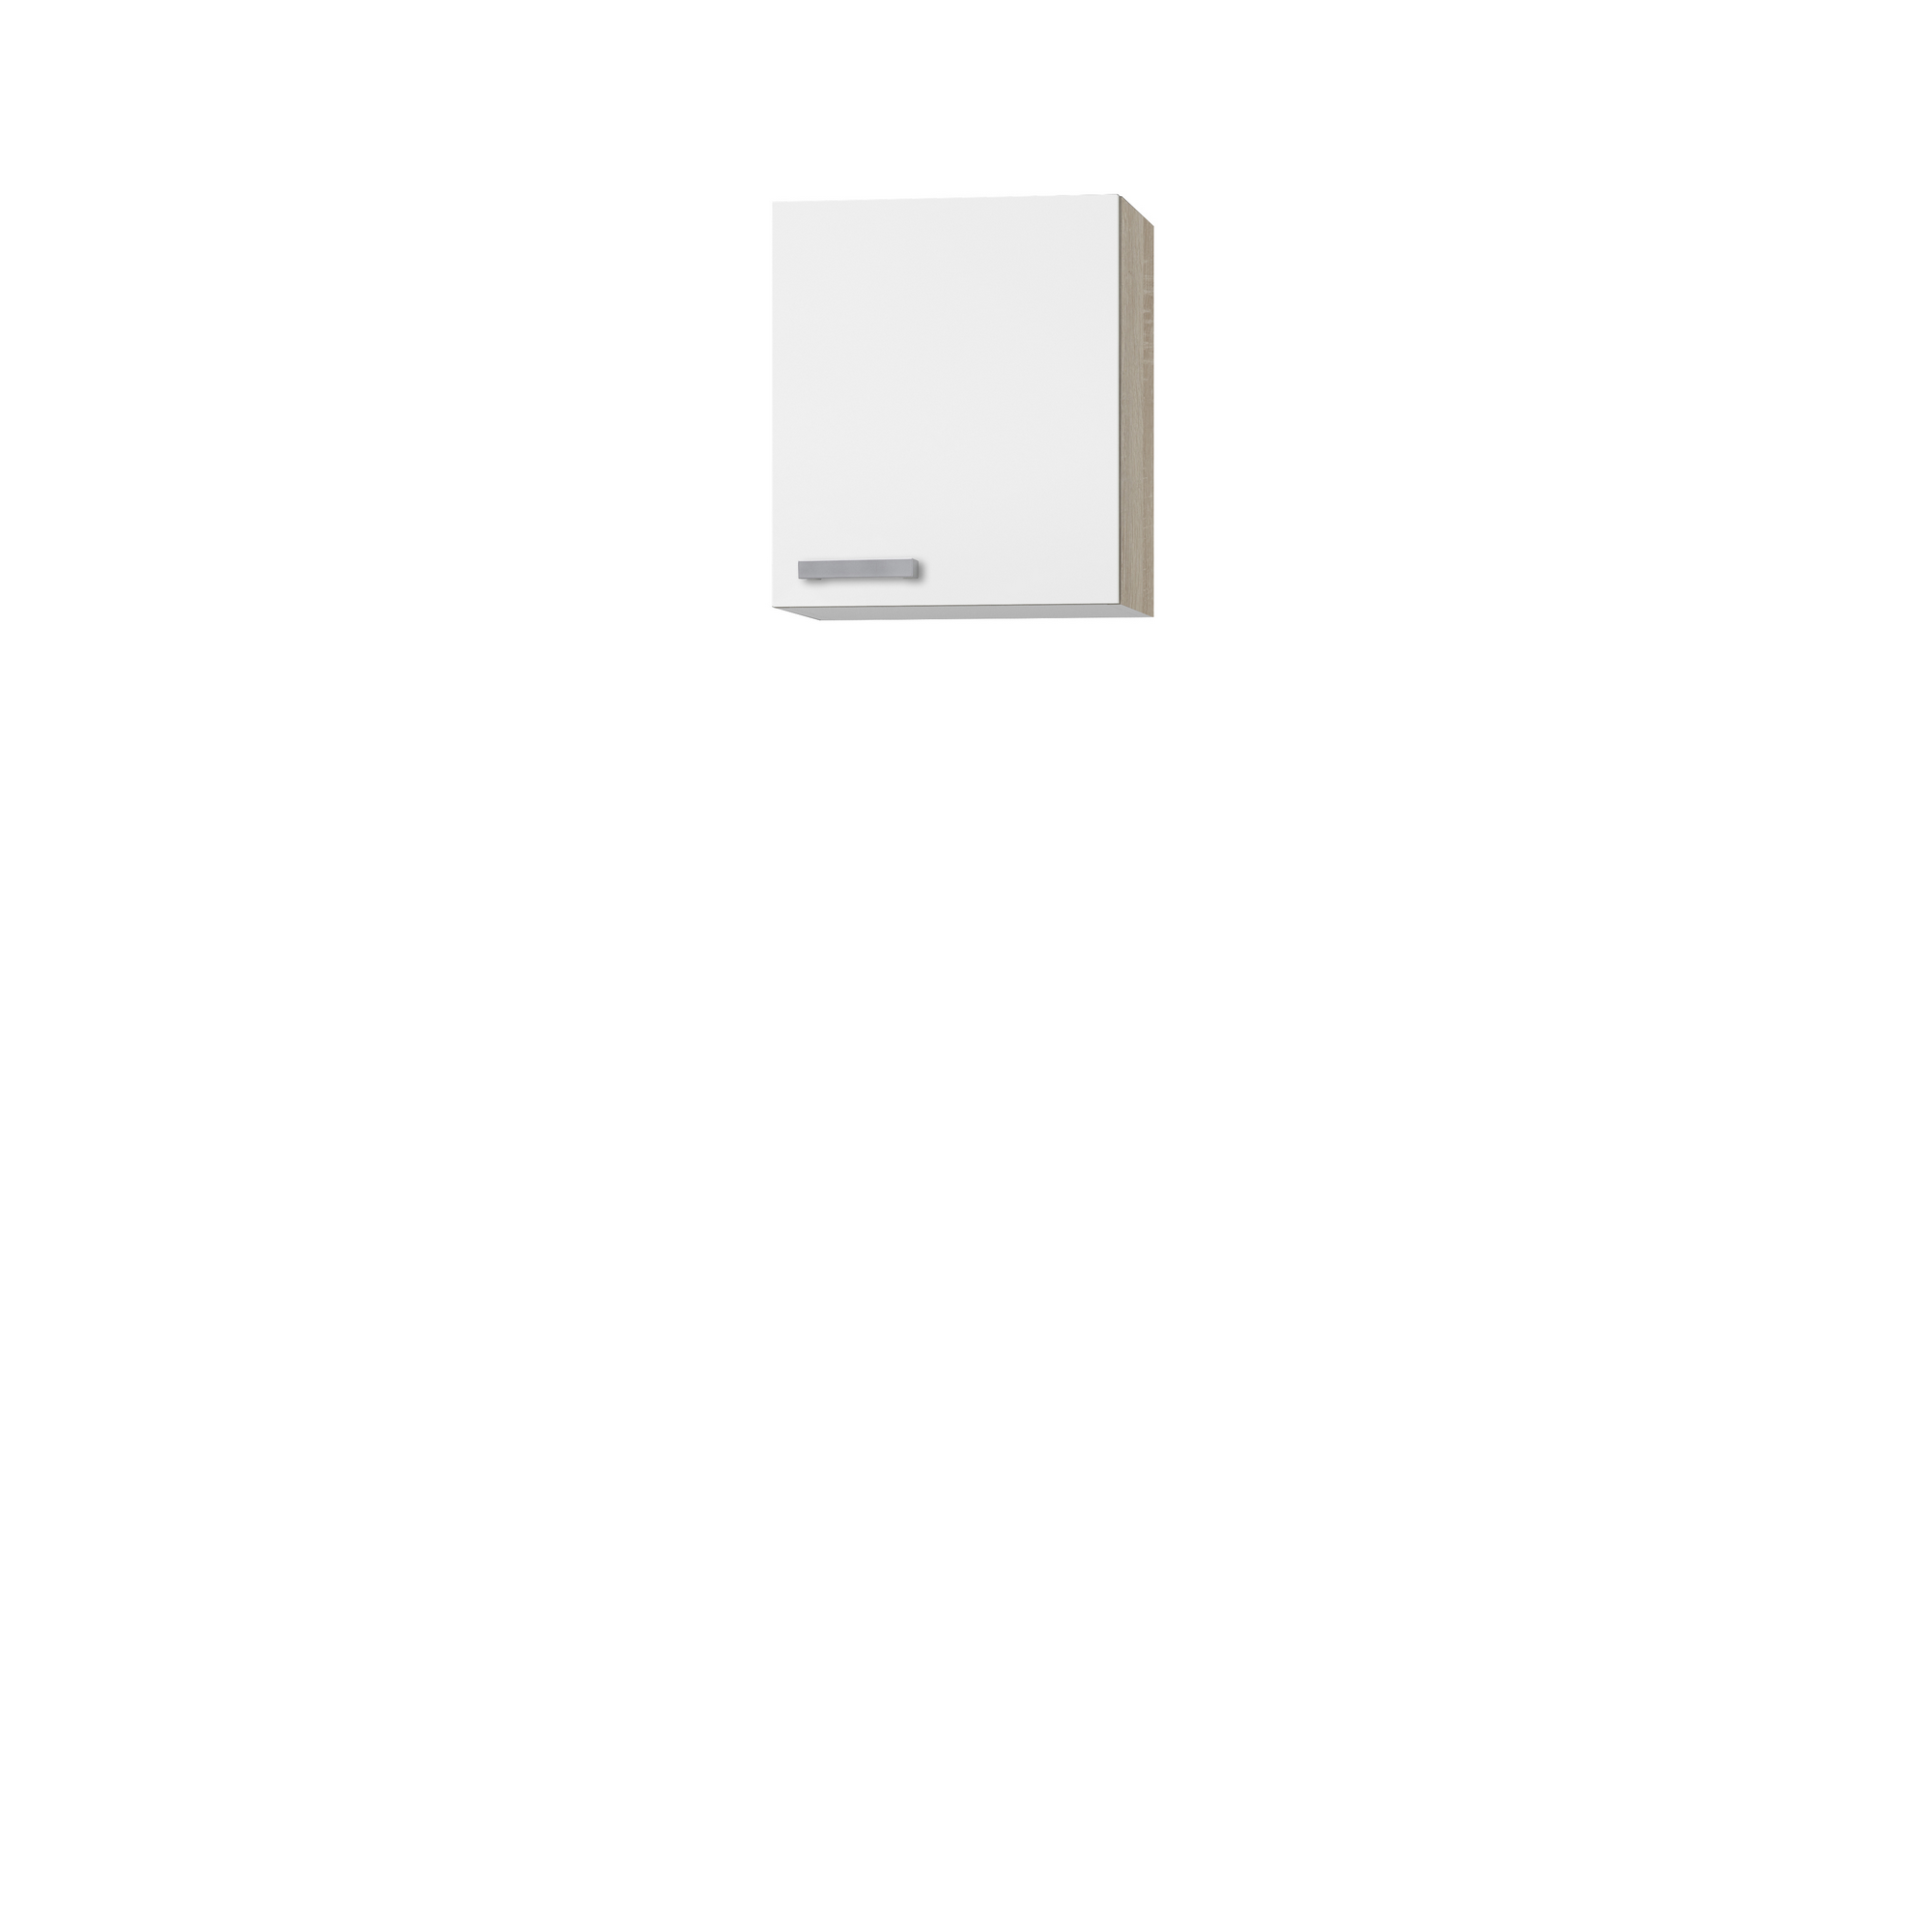 Oberschrank 'OPTIkult Zamora' weiß/eichefarben 50 x 57,6 x 60 cm + product picture